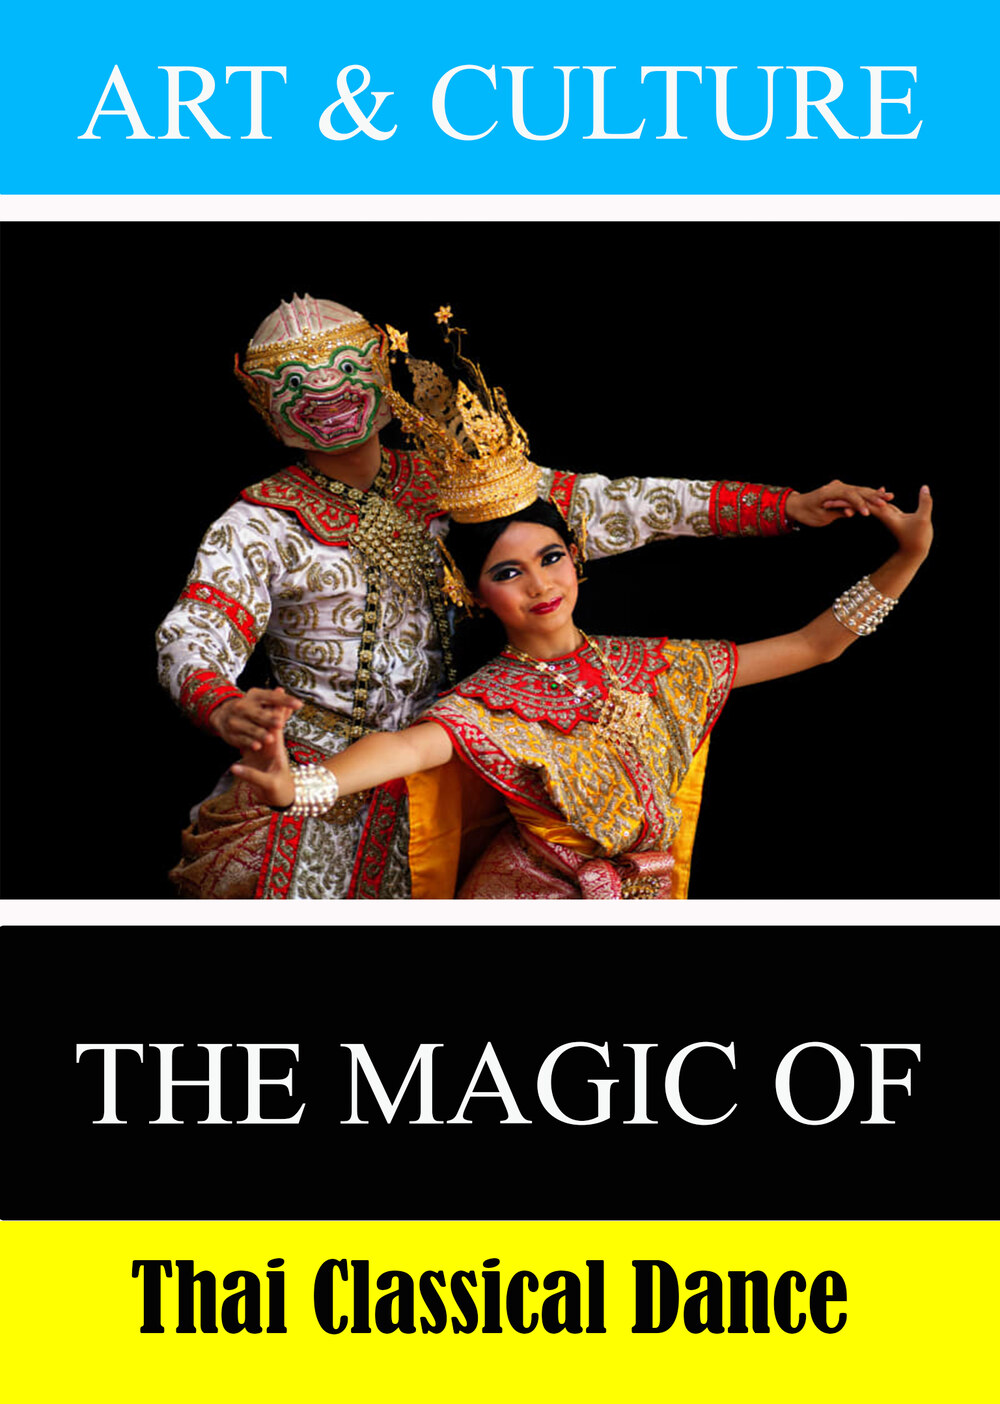 L7942 - Art & Culture: The Magic of Thai Classical Dance